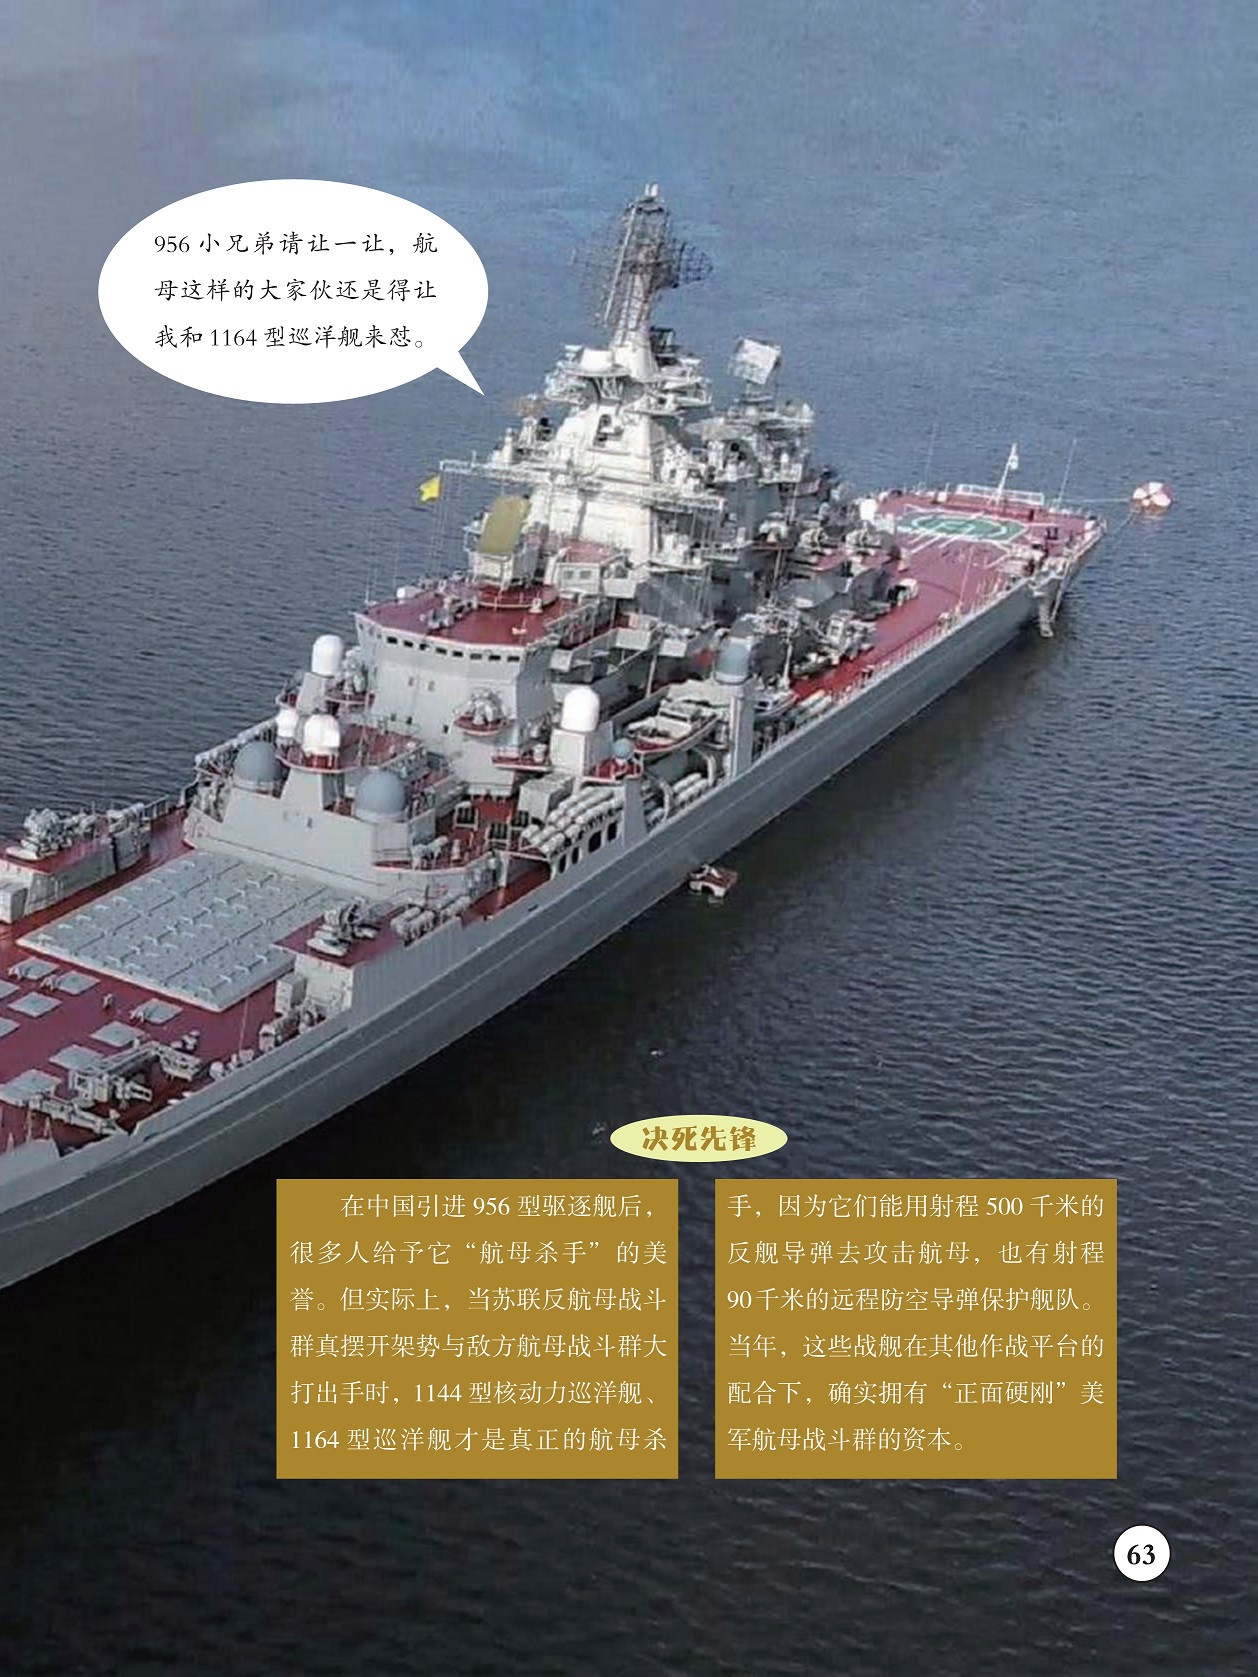 中国引进956型驱逐舰,“正面硬刚”美军航母战斗群的资本